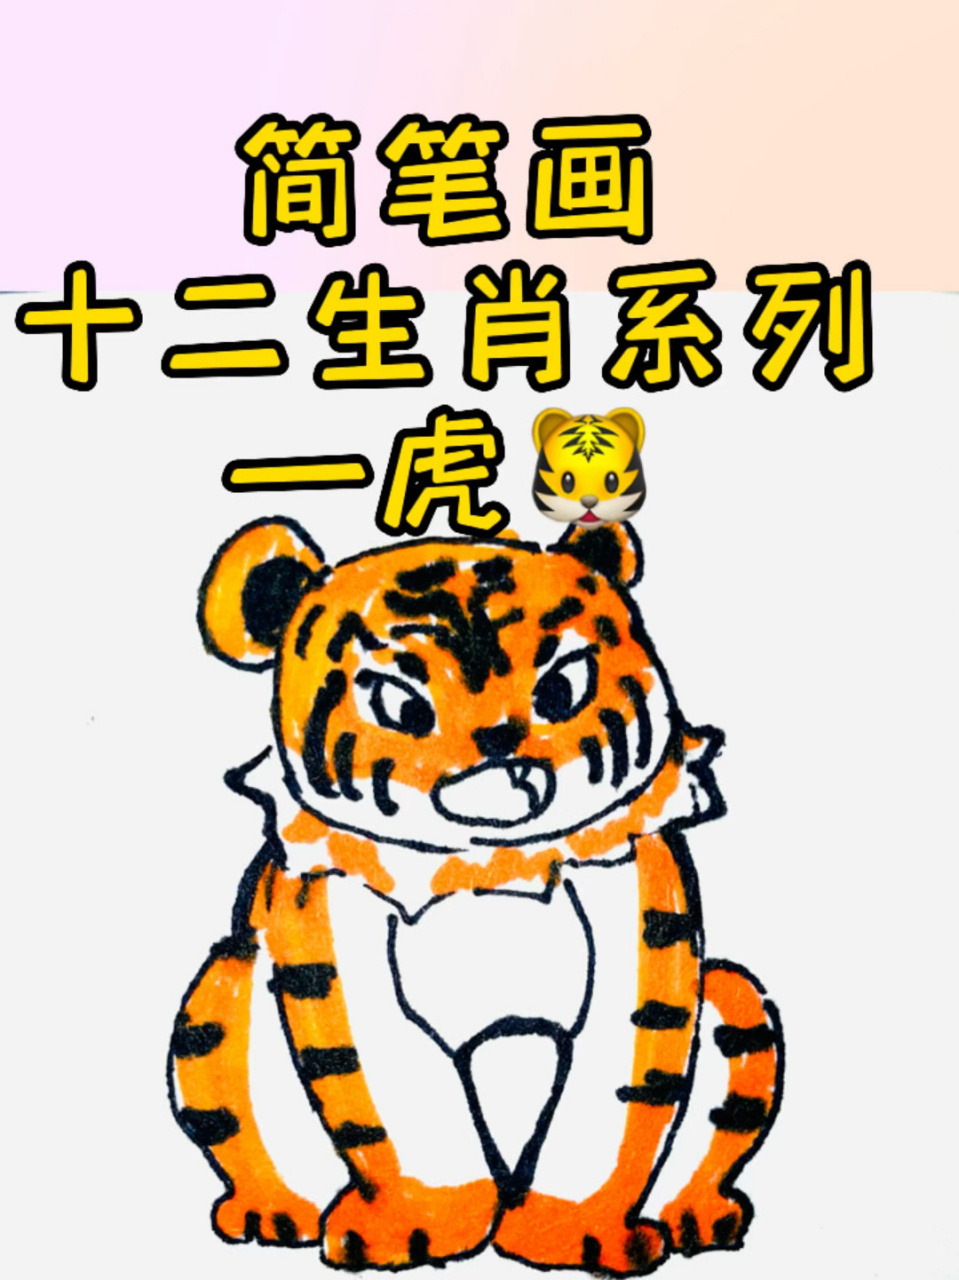 老虎的画法卡通图片